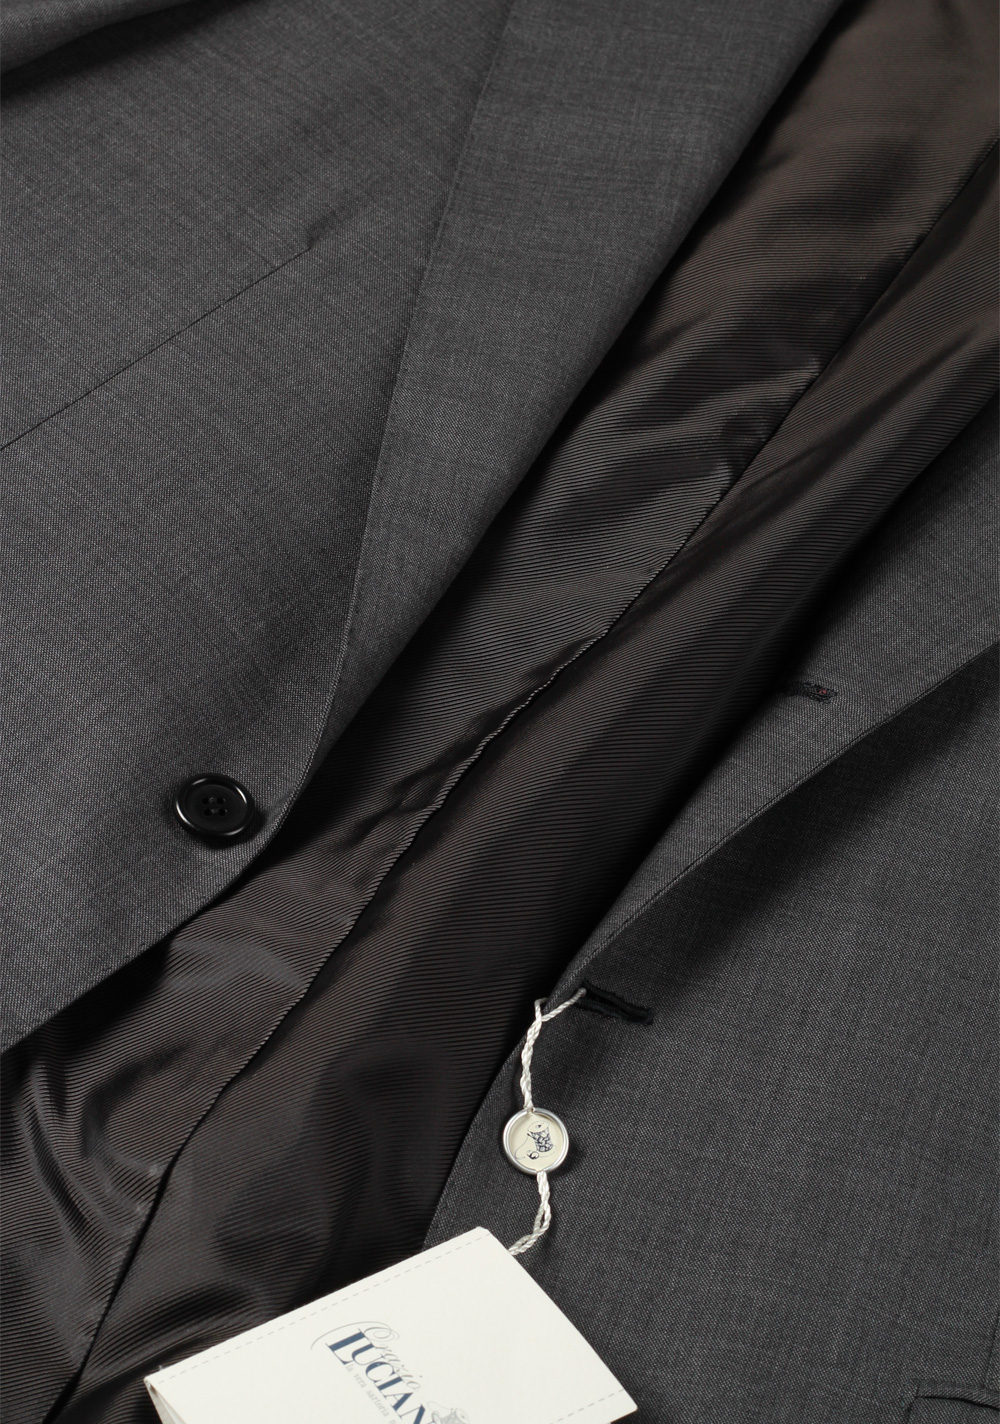 Orazio Luciano La Vera Sartoria Napoletana Suit Size 50L / 40L U.S. | Costume Limité